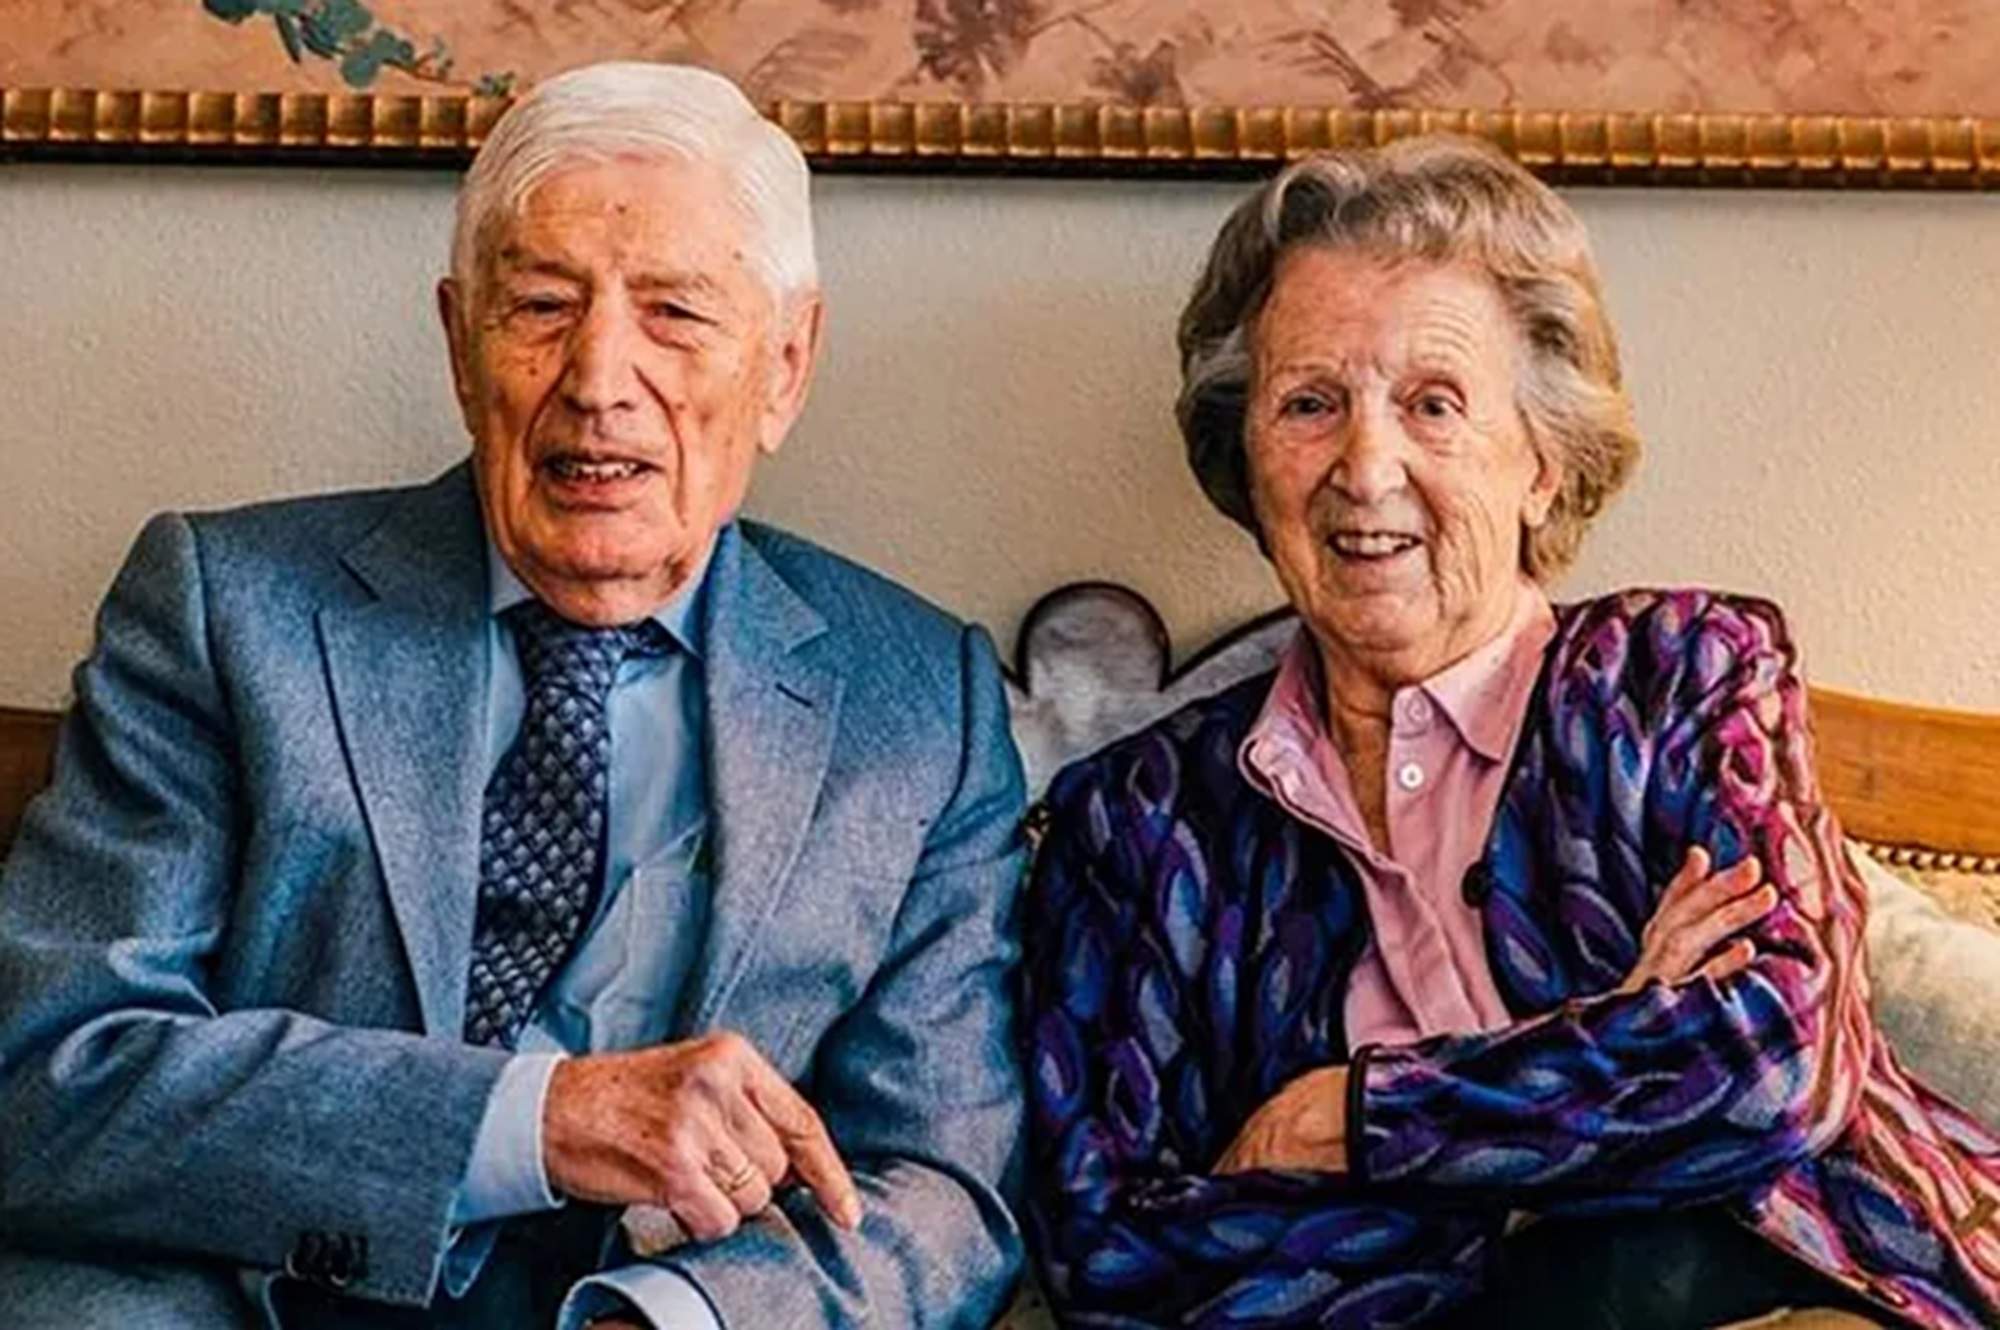 Dir adeu de la mà: l'ex primer ministre holandès i la seva dona moren en una eutanàsia conjunta